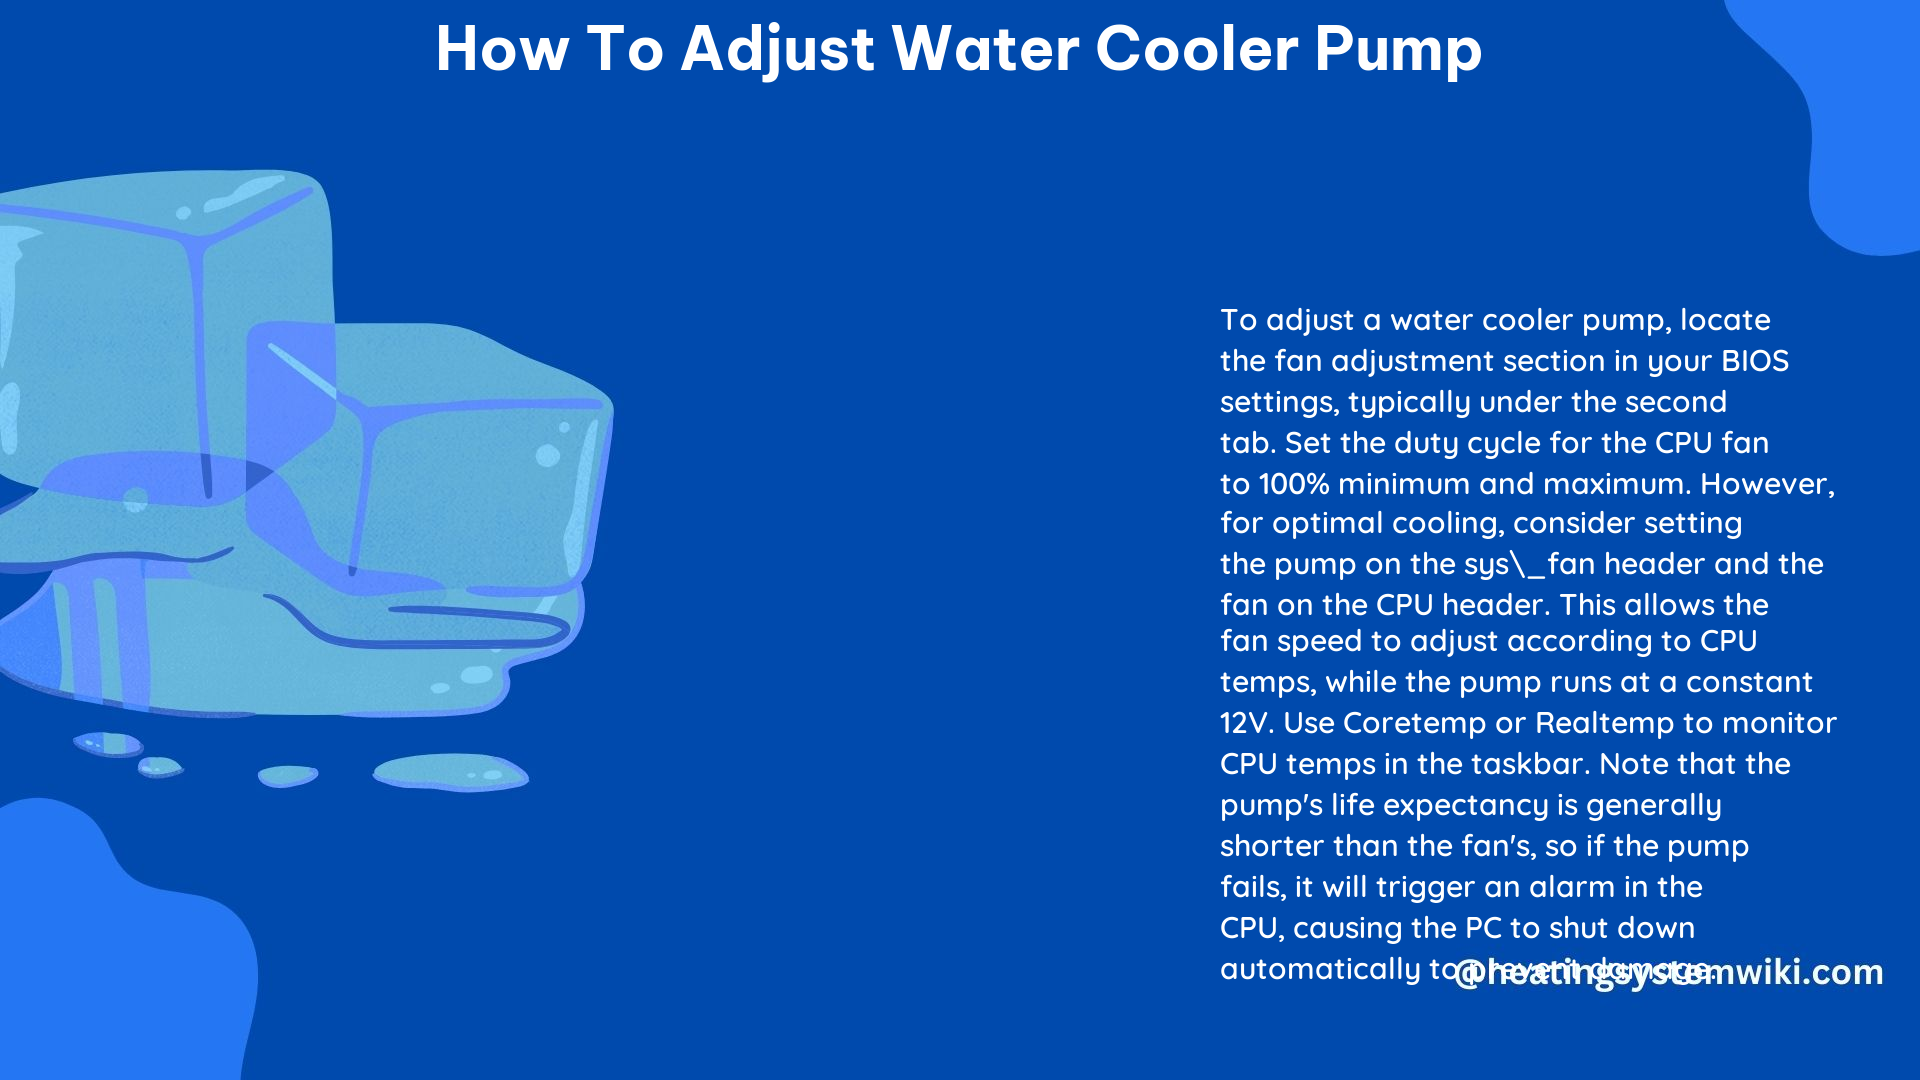 How to Adjust Water Cooler Pump